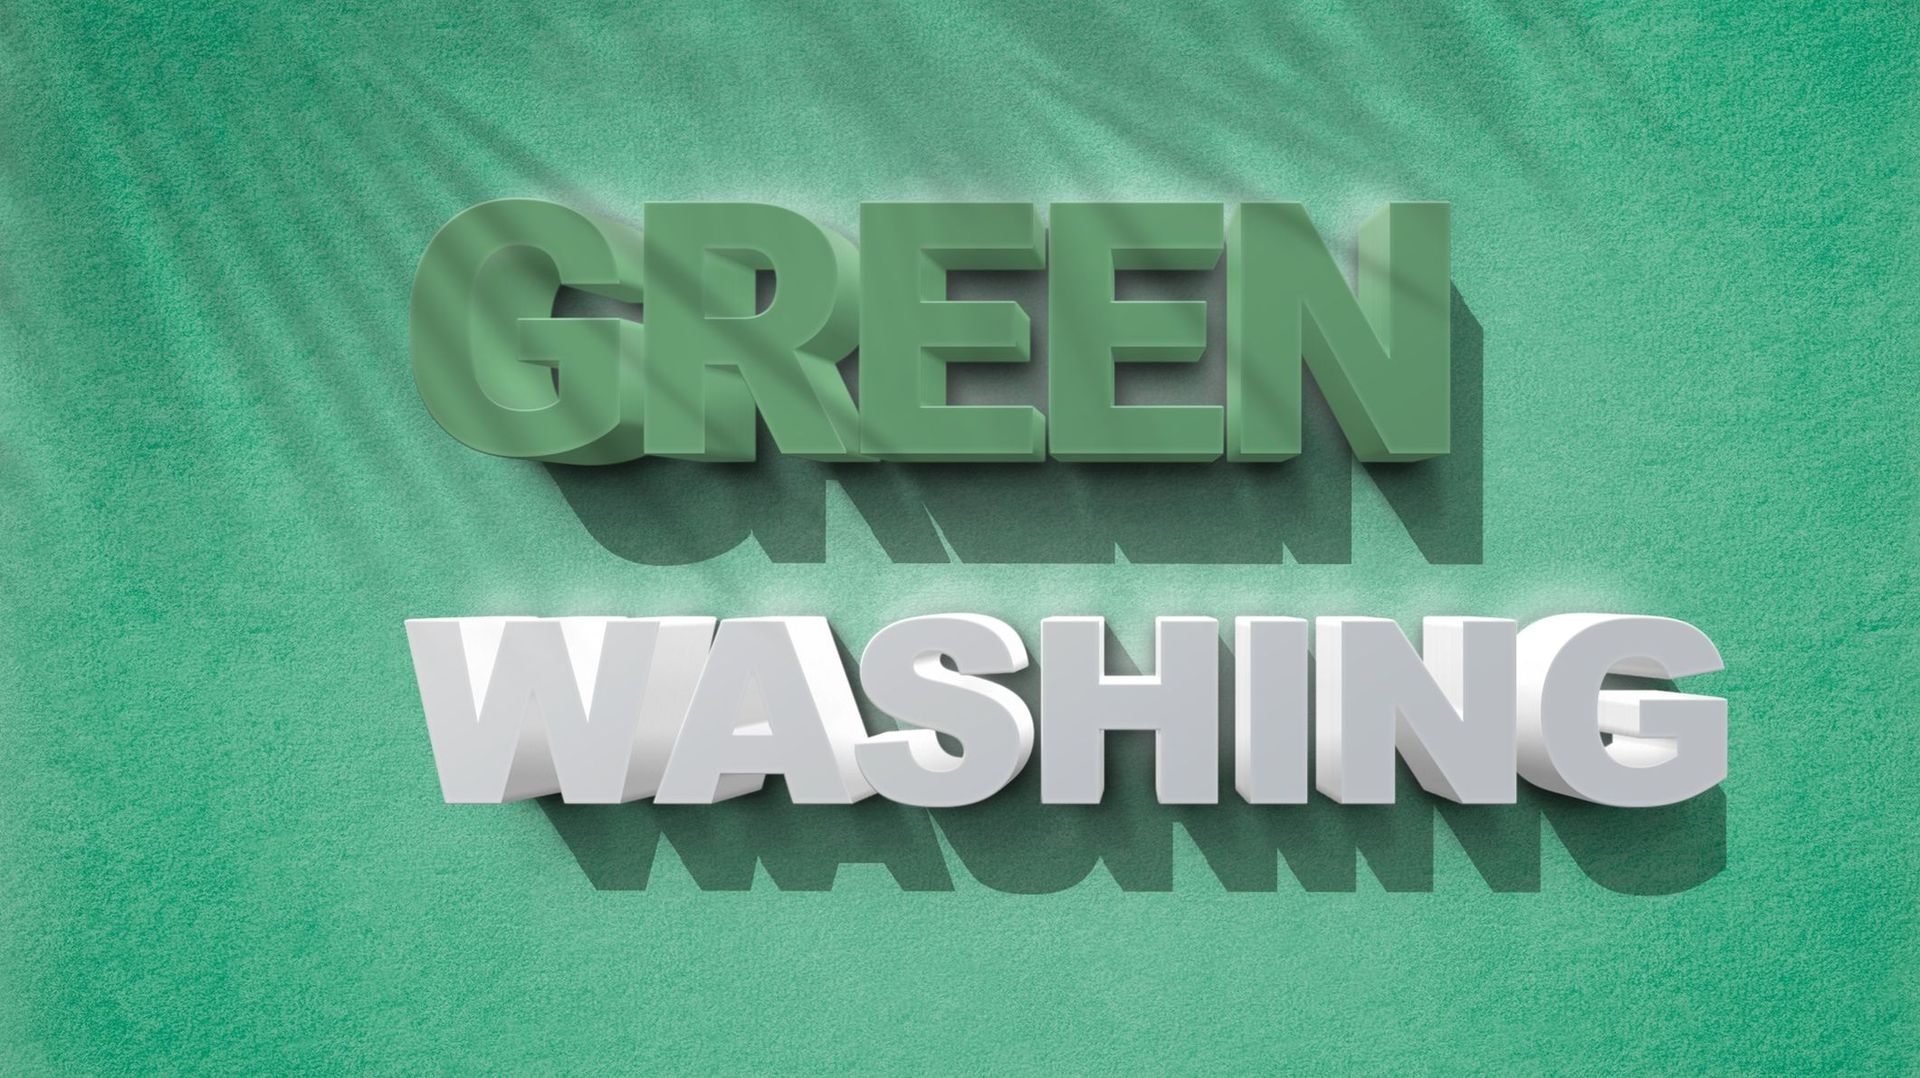 Le Greenwashing dans la mode : comment le repérer et l’éviter ?